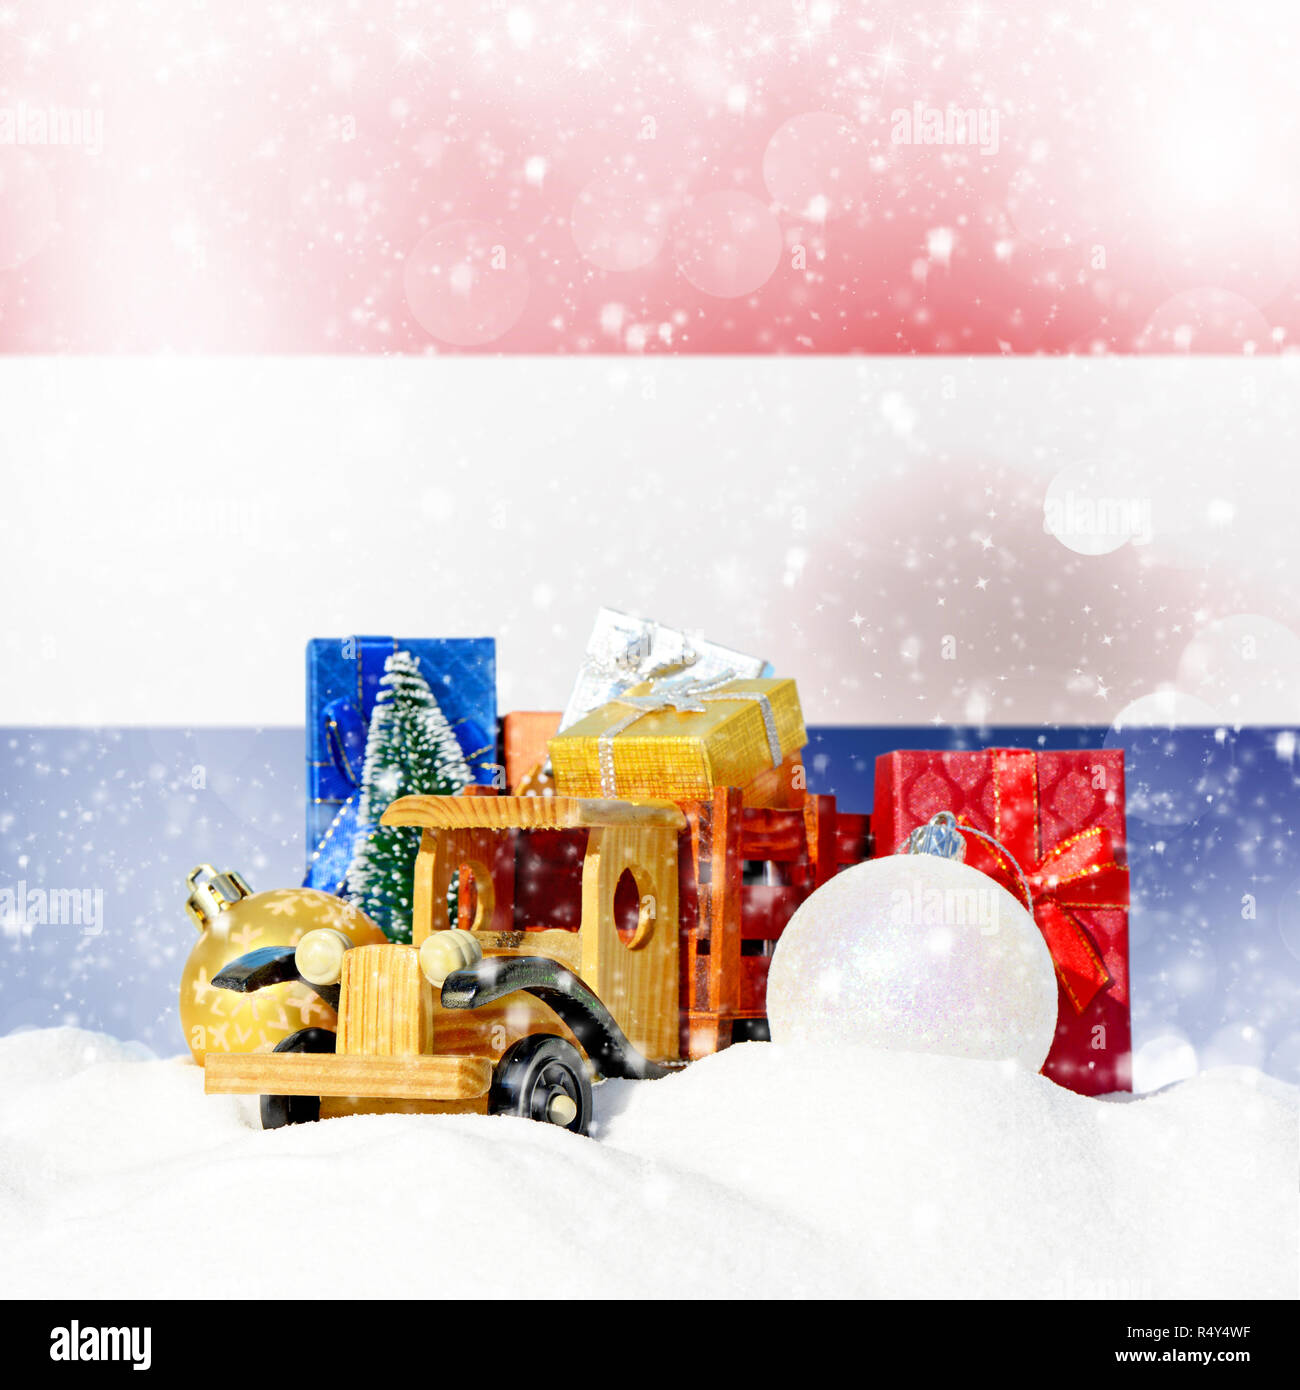 Weihnachten Hintergrund. Spielzeug-LKW mit Geschenken, Neues Jahr Tanne, Kugeln im Schneetreiben und Niederlande Flagge Stockfoto